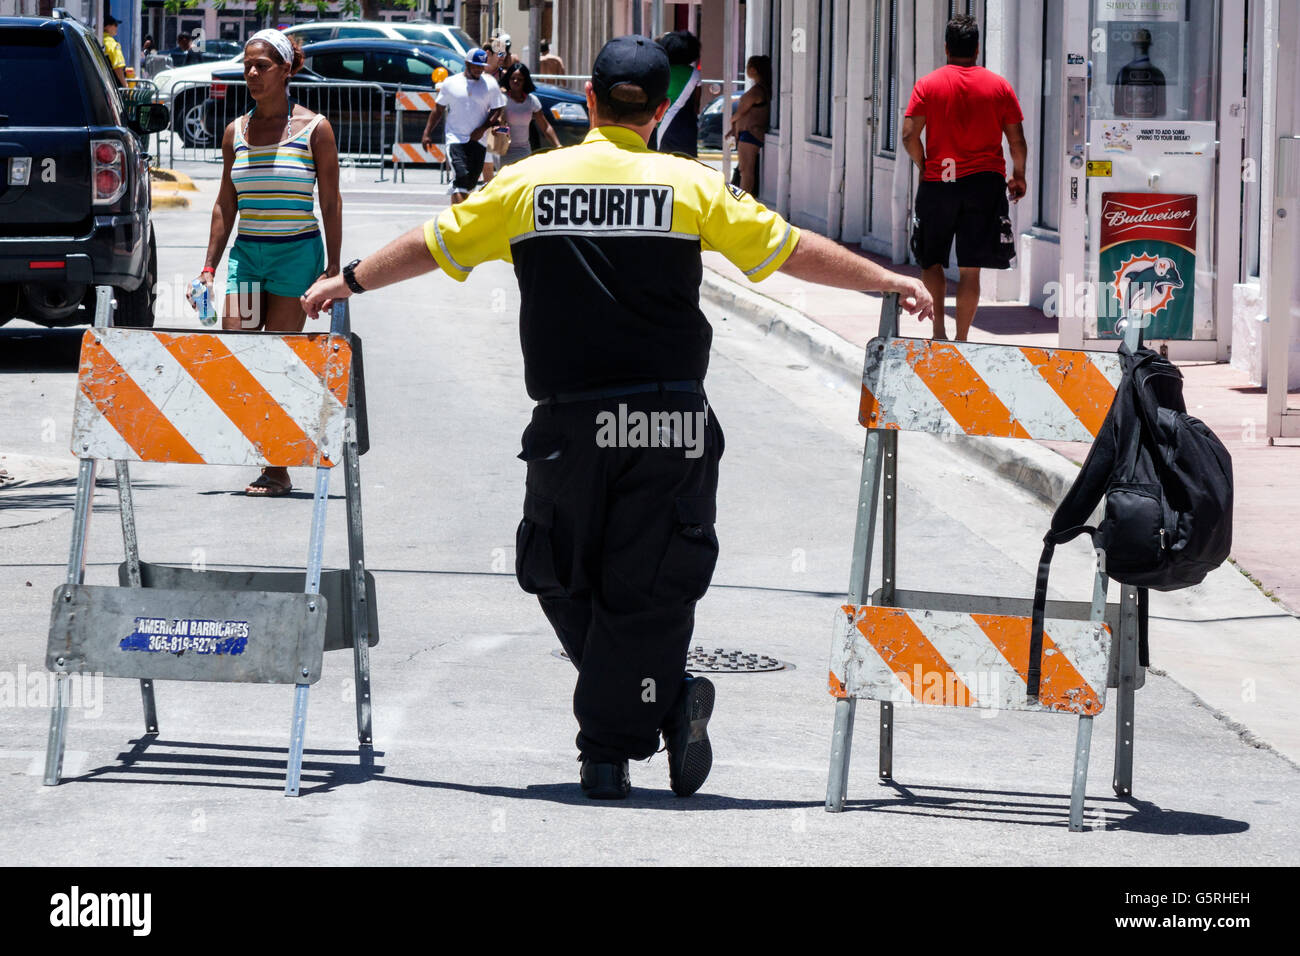 Miami Beach Florida, guardia de seguridad, adulto, adultos, hombre hombre hombre, trabajador, empleados, barricada, FL160530085 Foto de stock